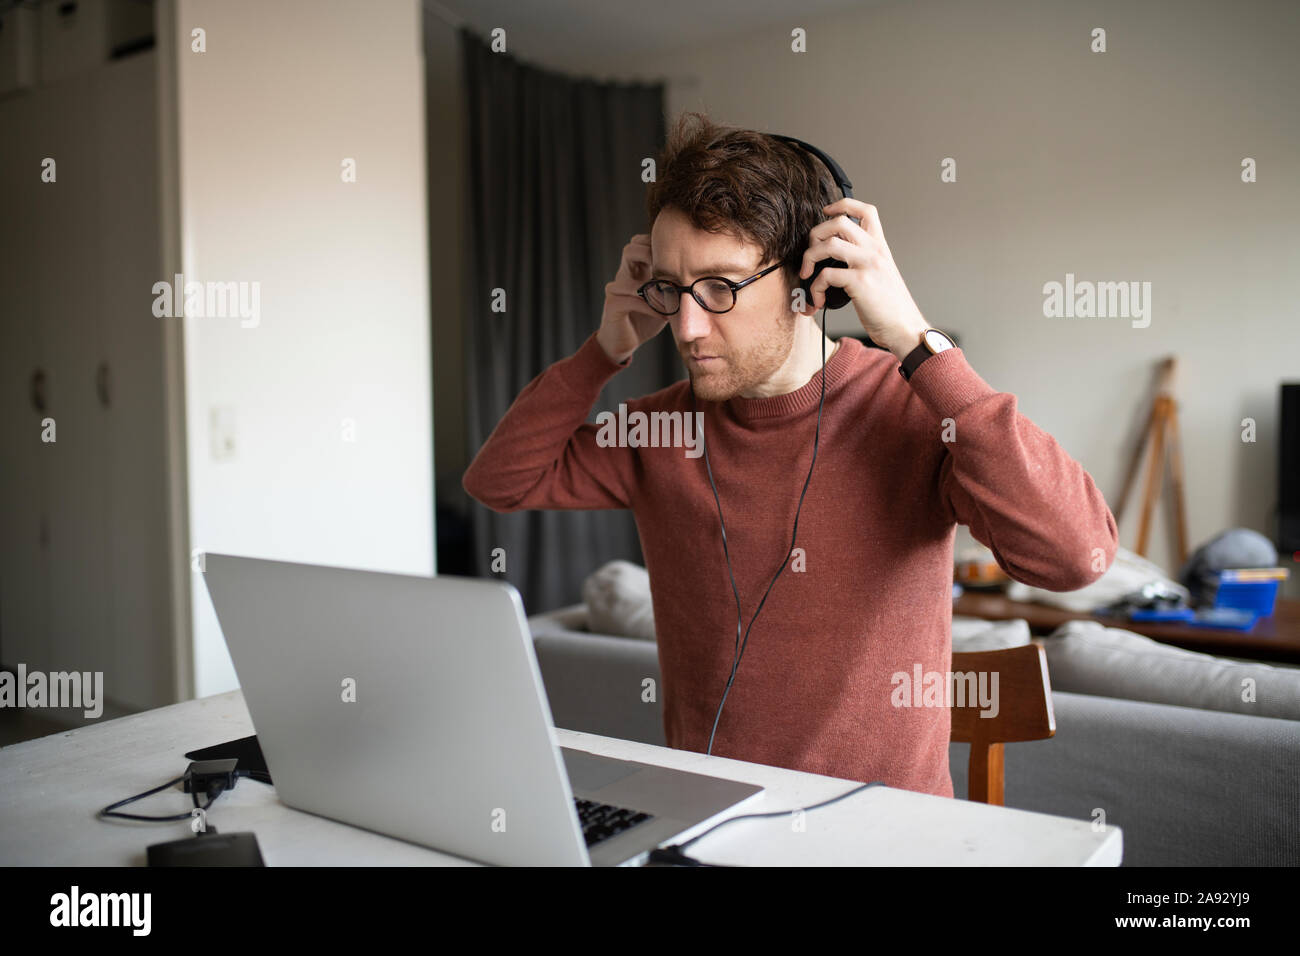 Homme avec un casque à l'aide d'ordinateur portable Banque D'Images